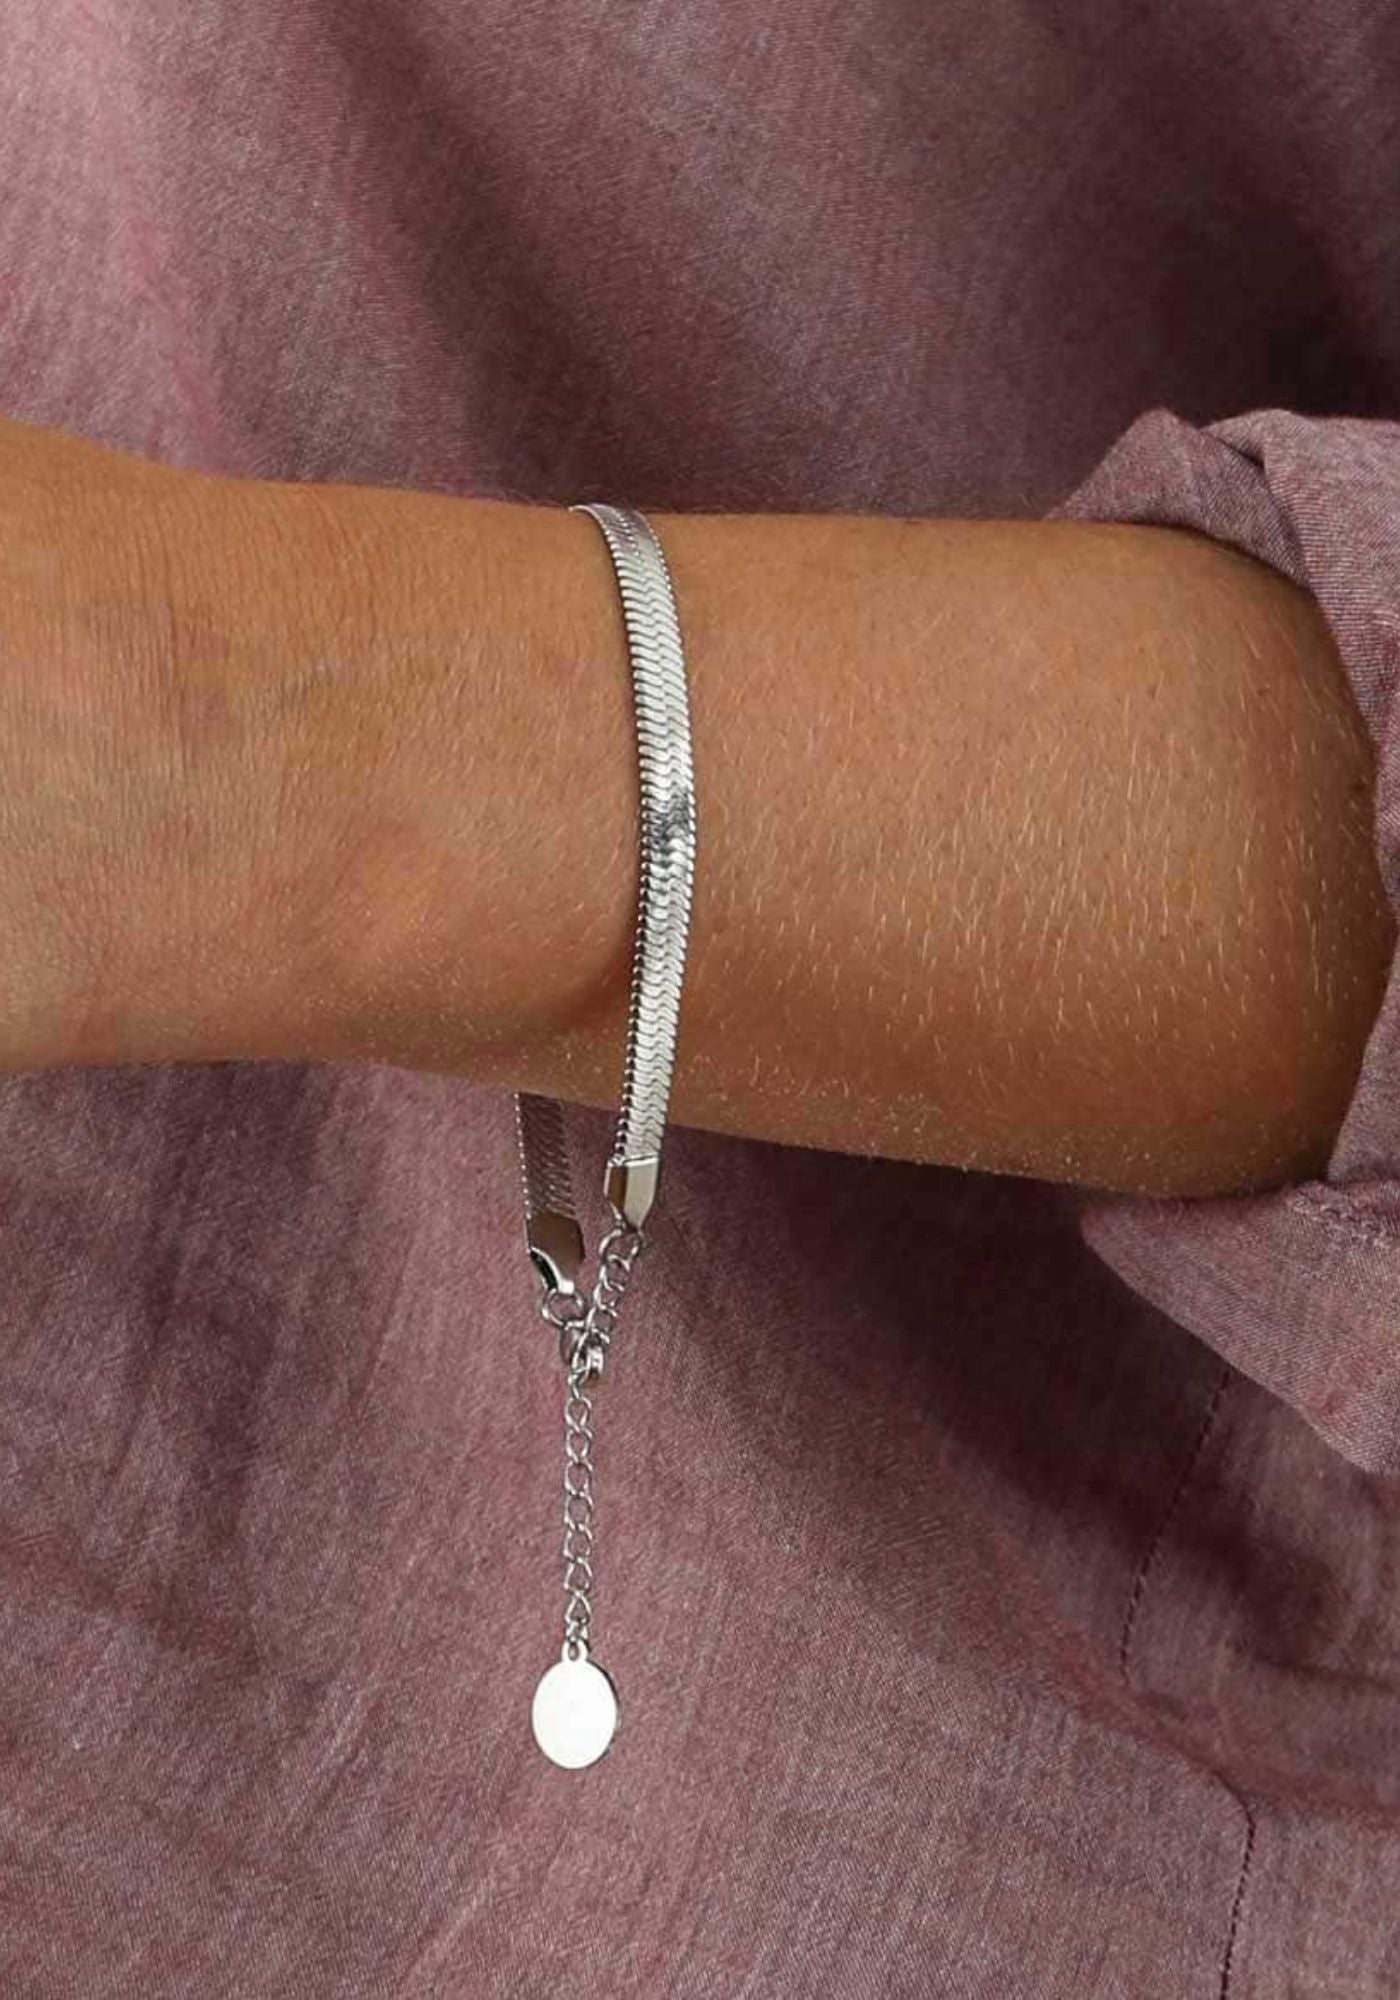 La femme porte le bracelet en argenté de chez Caprice Paris